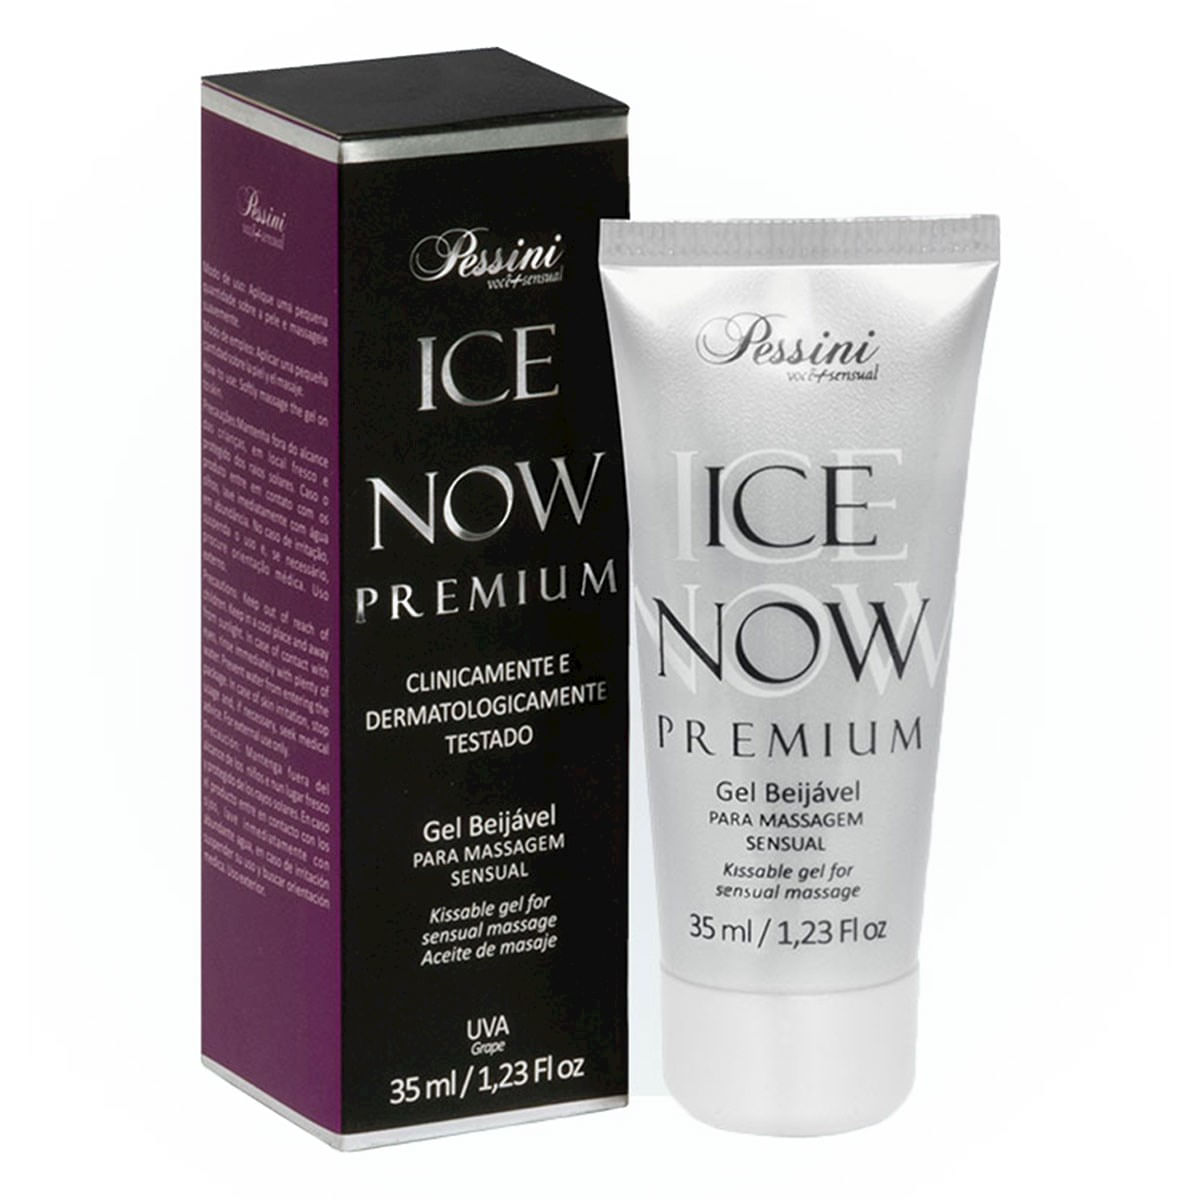 Ice Now Premium Uva 35ml Pessini